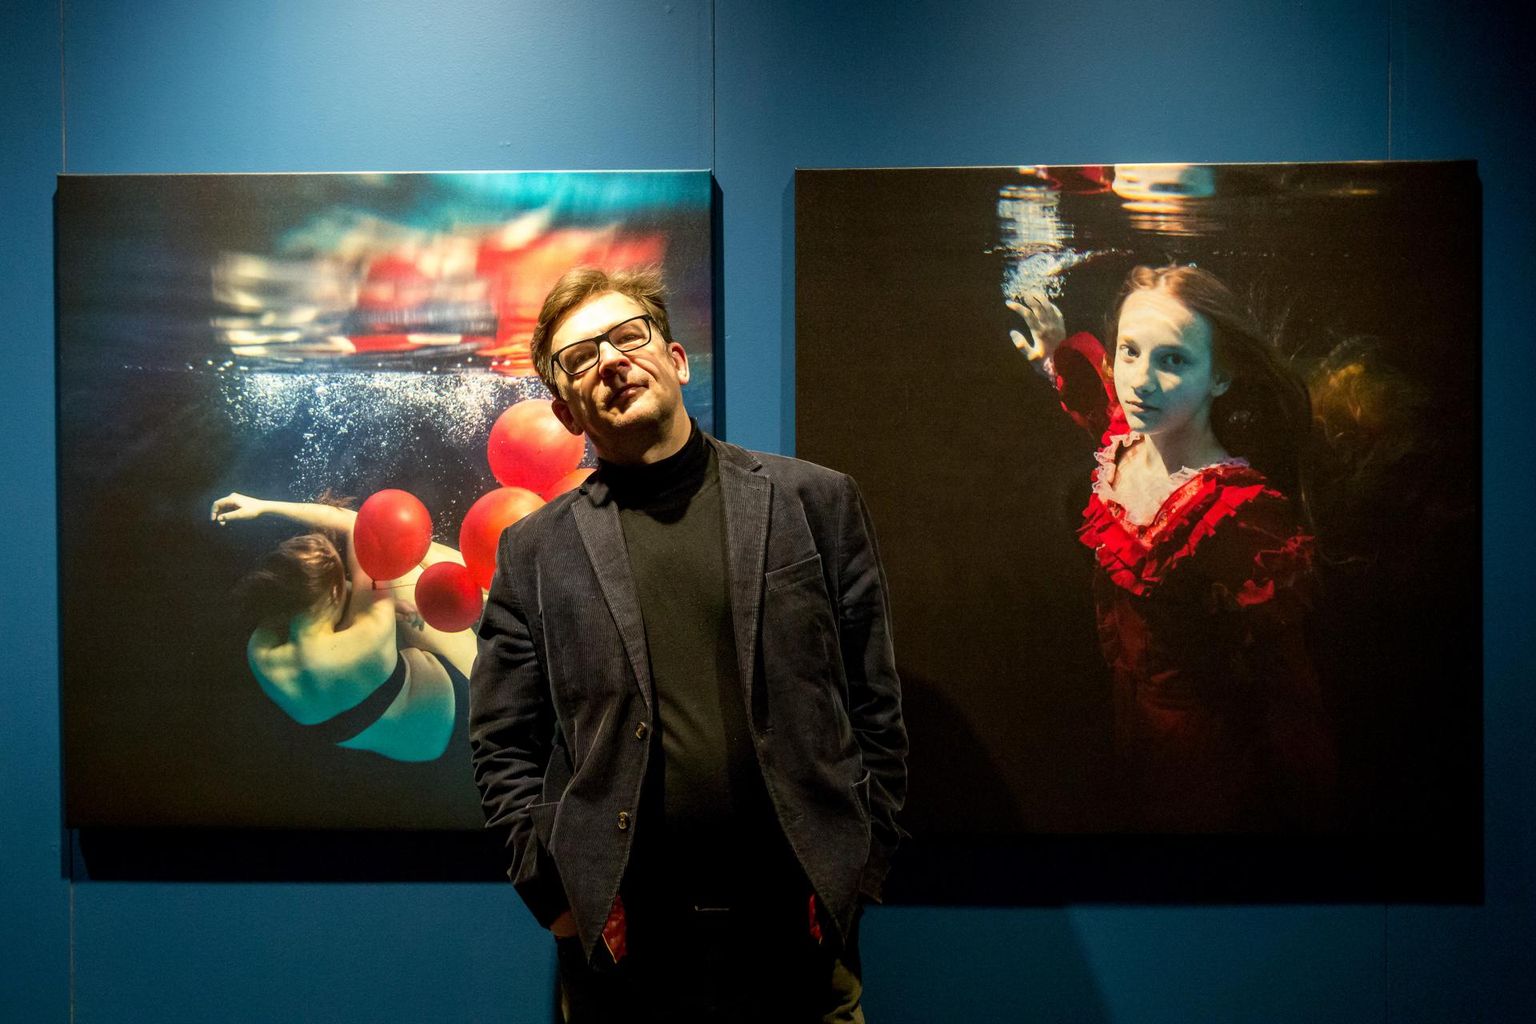 Daugavpilsis Mark Rothko kunstikeskuses näeb Pärnu fotokunstniku Andres Adamsoni näitust “Tuhande unenäo meri”.